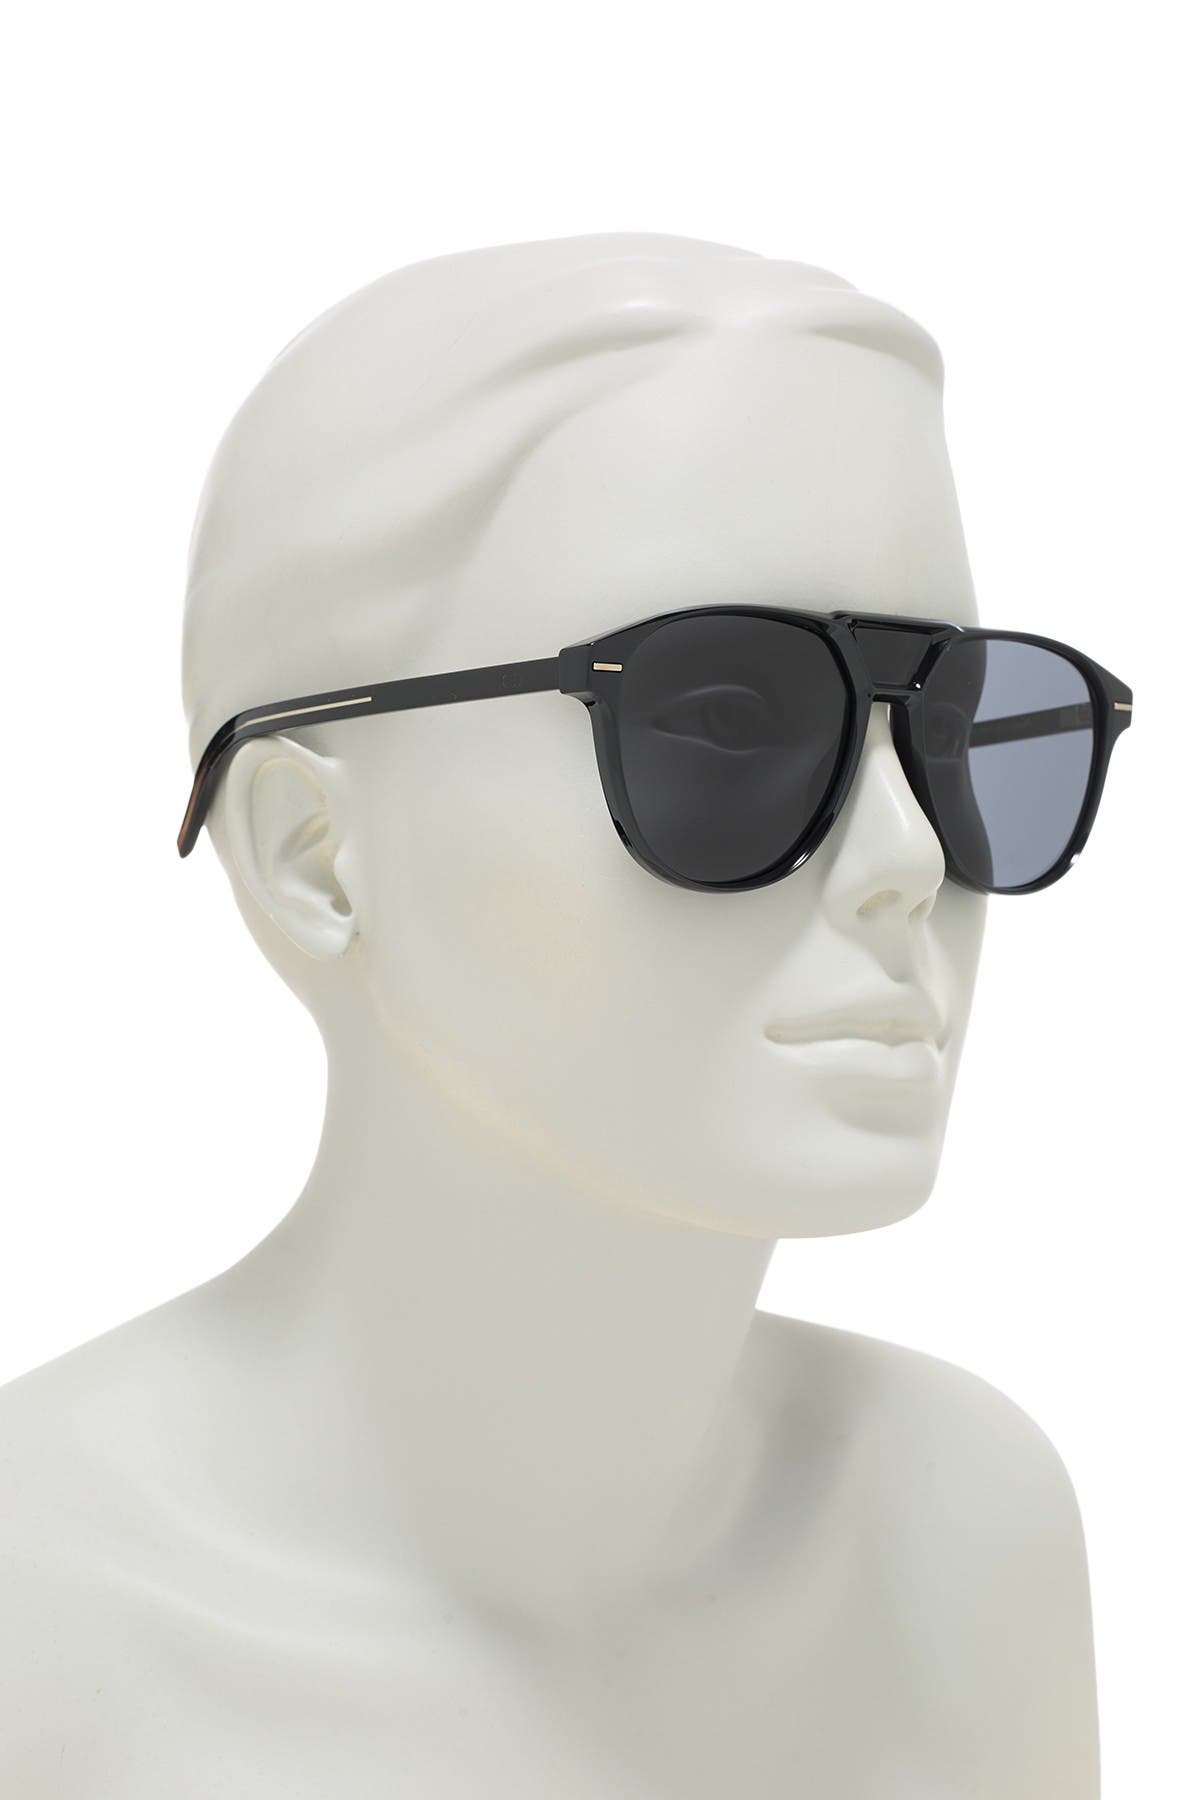 dior aviator sunglasses